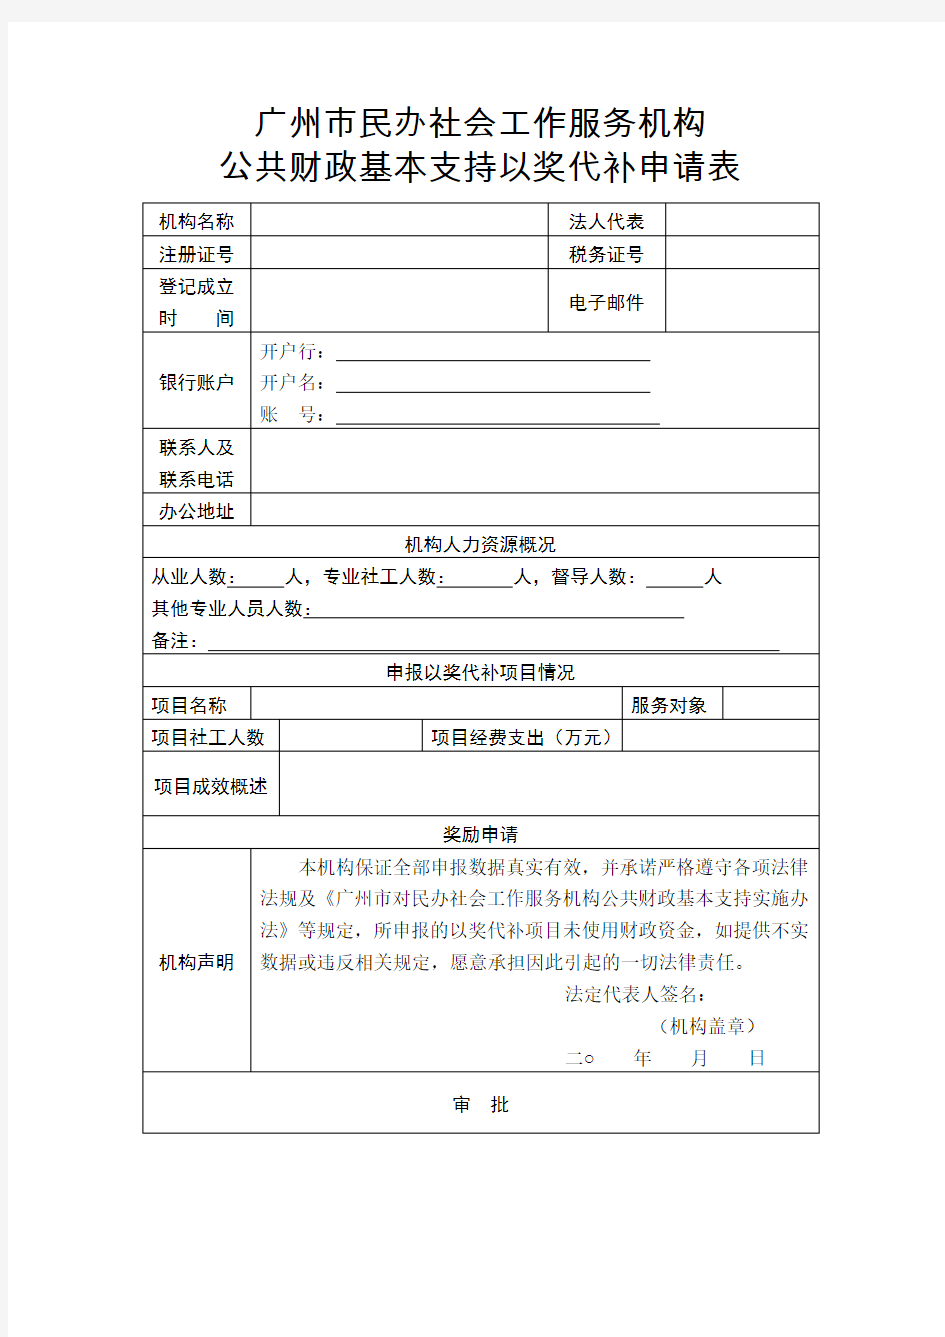 广州市民办社会工作服务机构